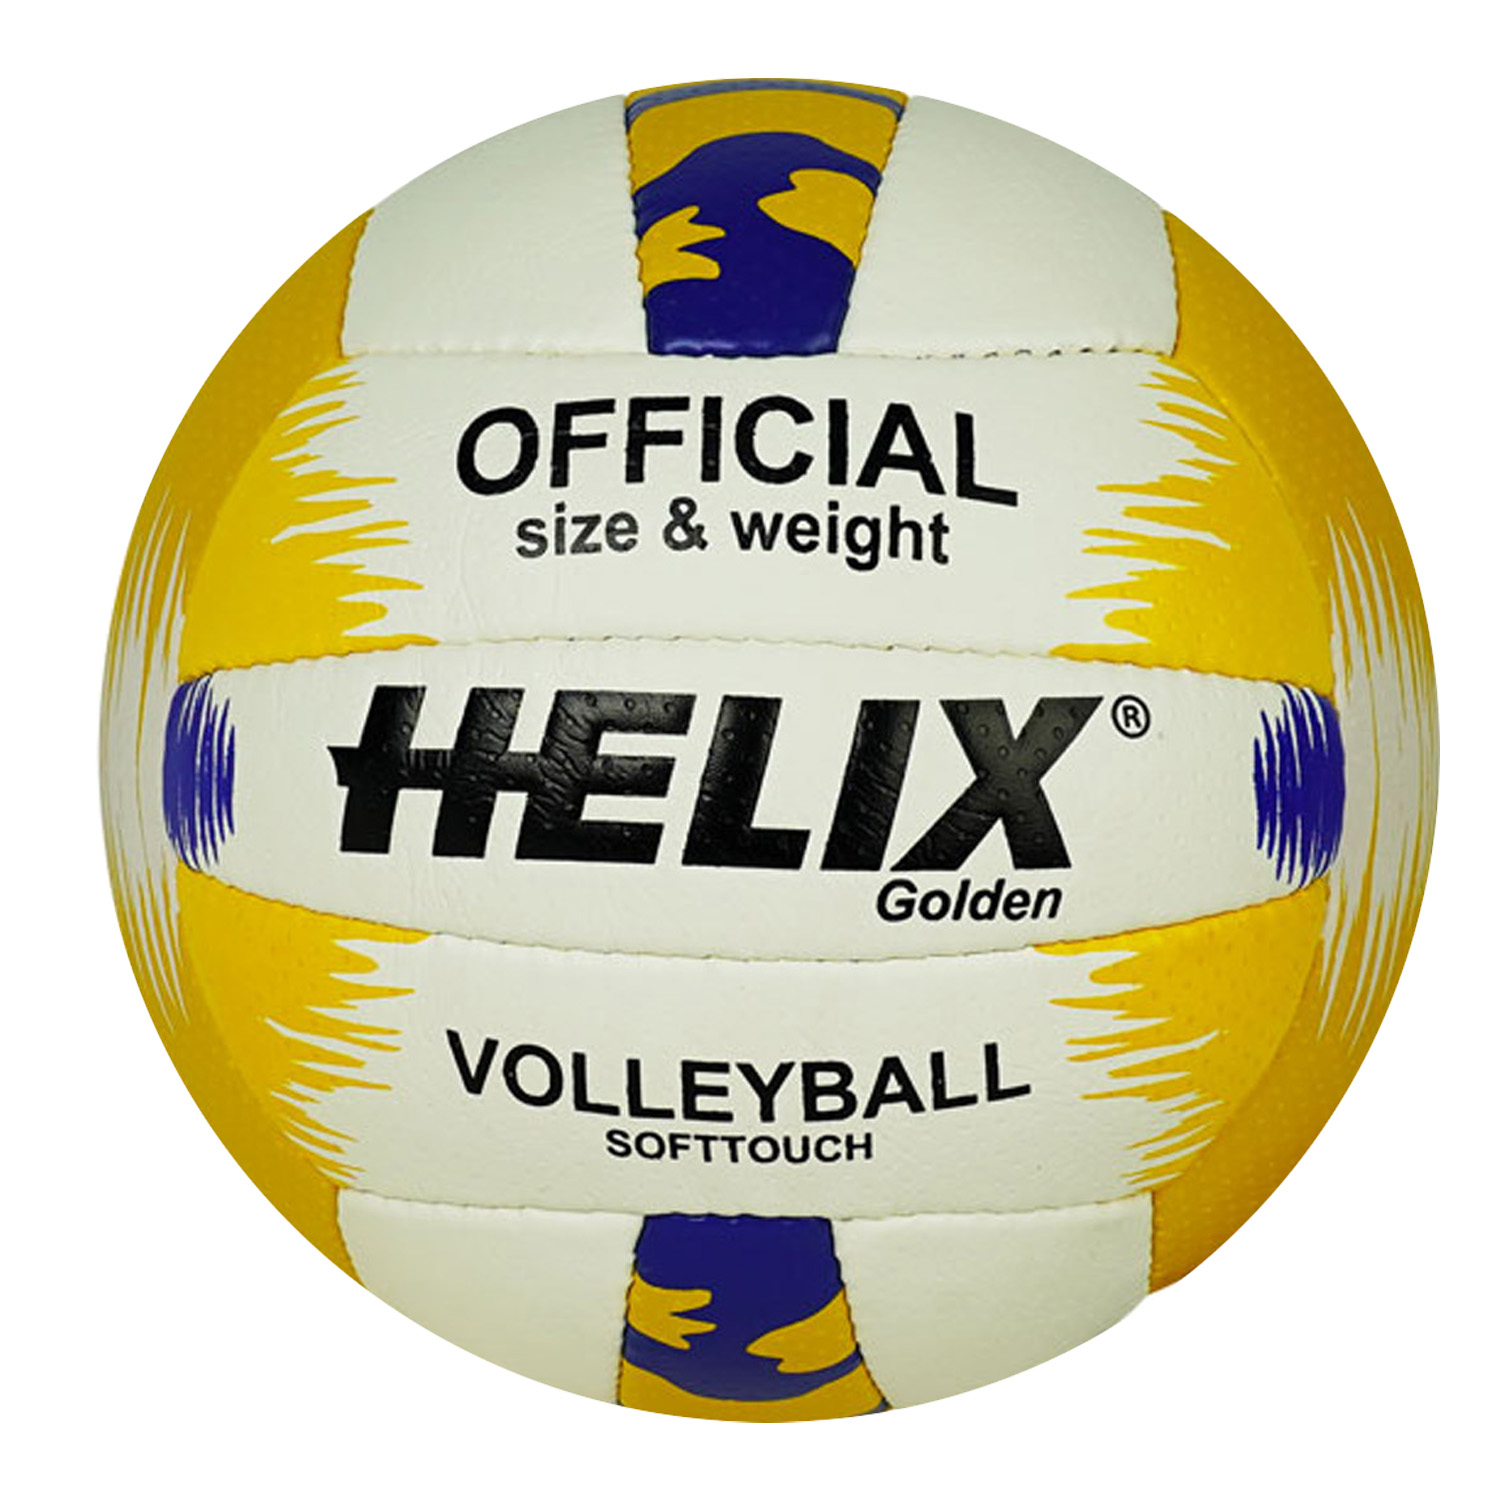 Helix Golden Volleyball Ball